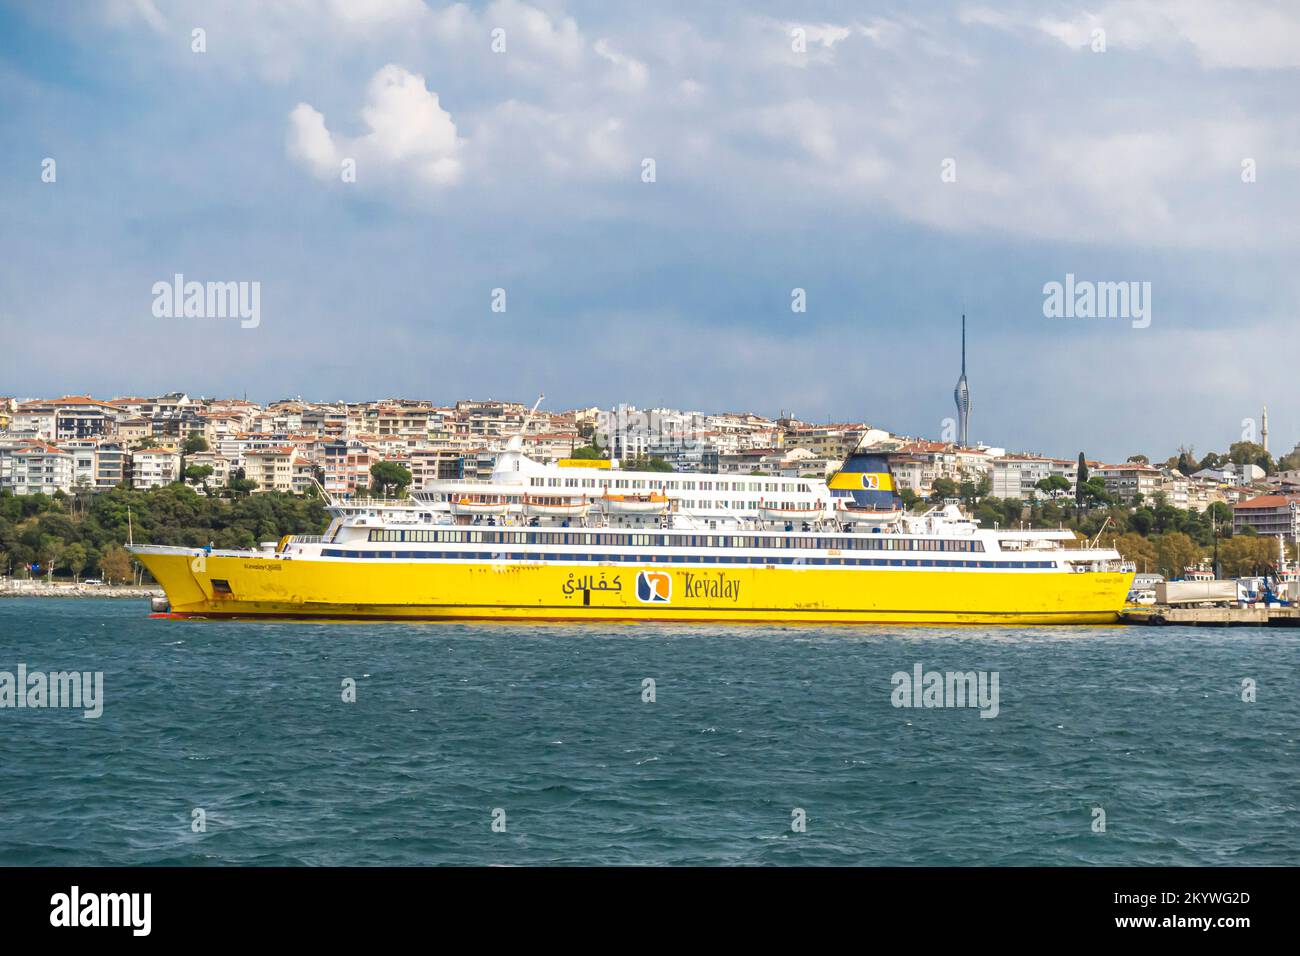 Das Schiff Kevalay - ein Passagier-/Ro-Ro-Frachtschiff, das 1972 gebaut wurde und auf dem Bosporus Istanbul in der Türkei segelt Stockfoto